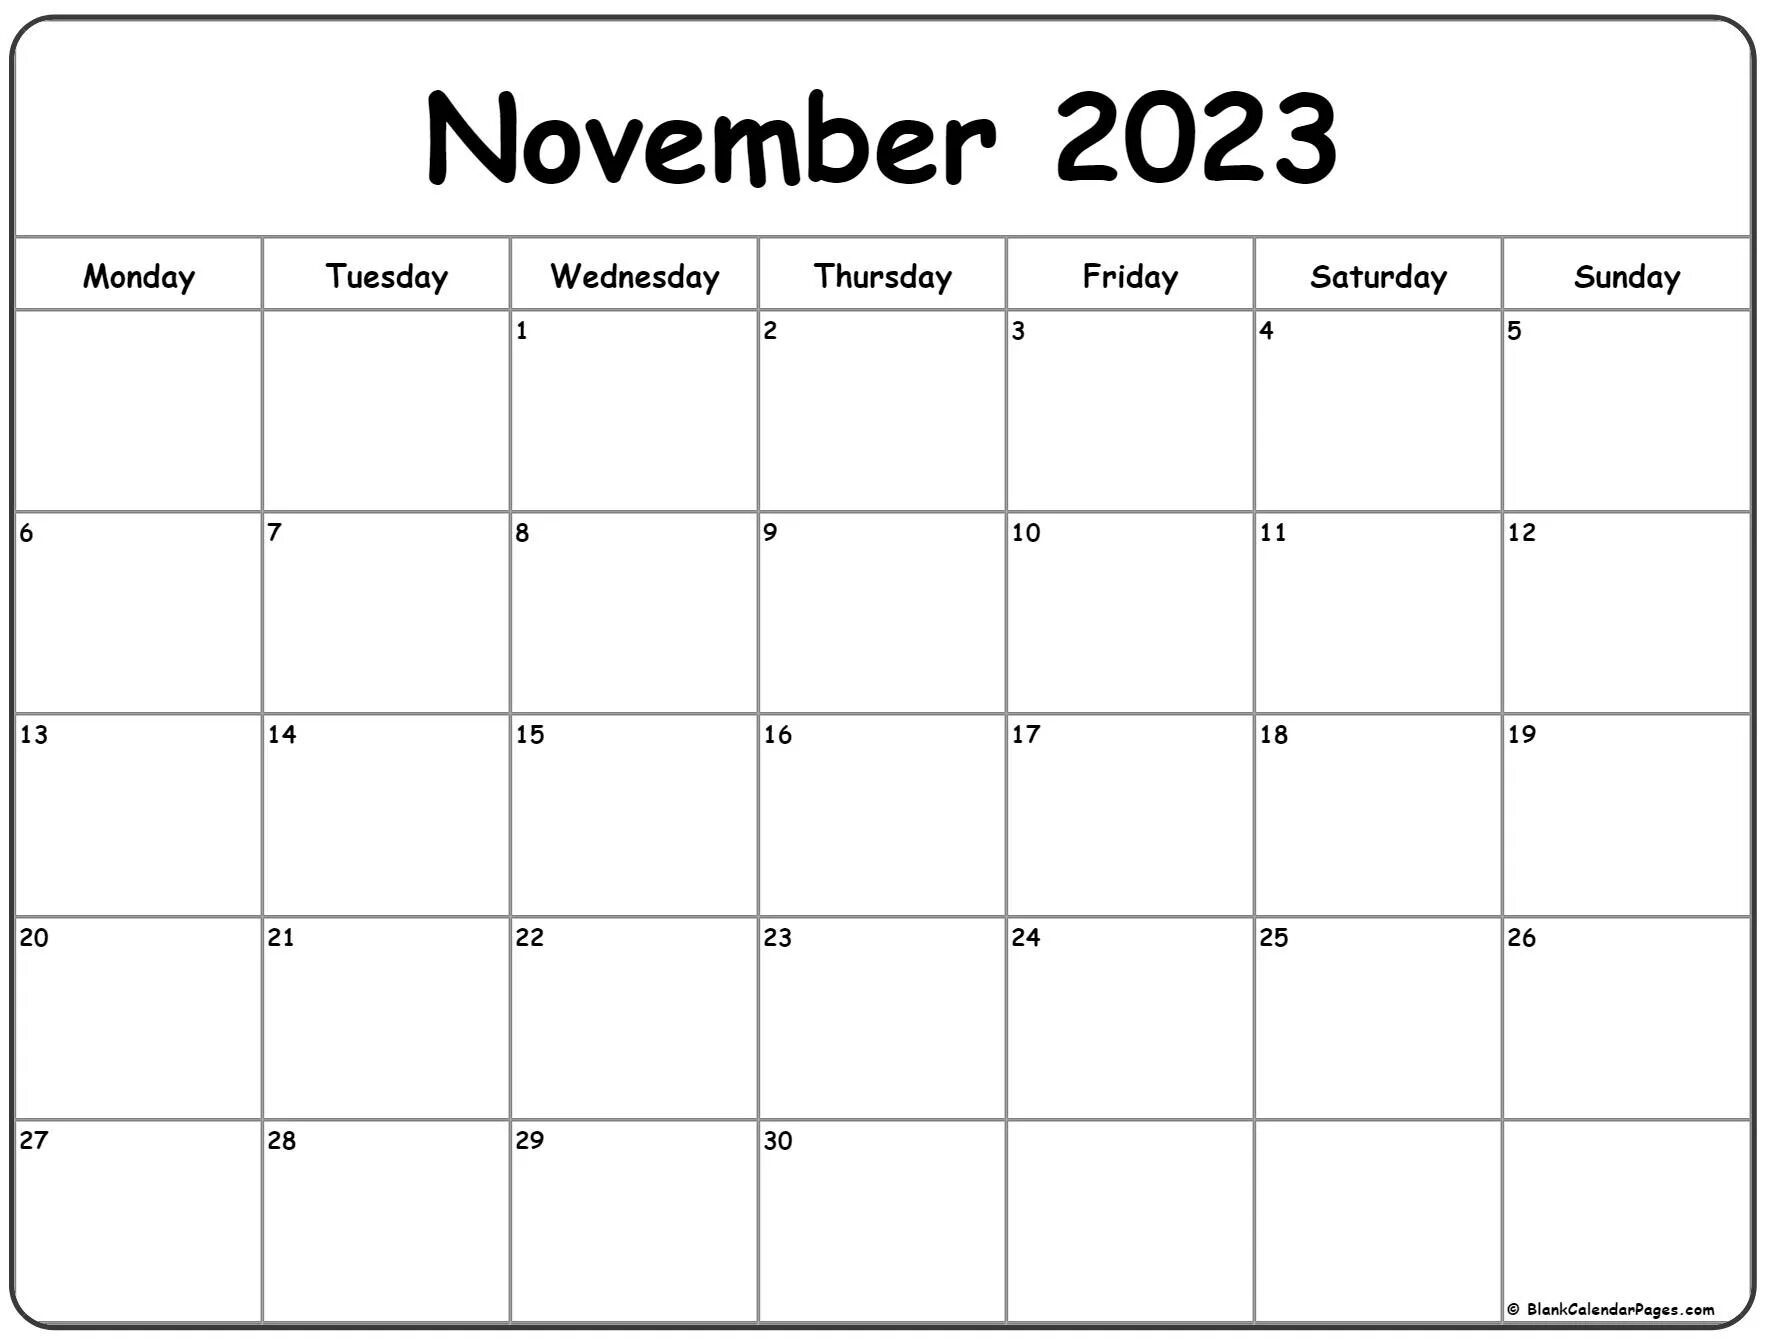 Календарь на май 2022 года. November 2021 календарь. Календарь июль 2022. Апрель календарь пустой.